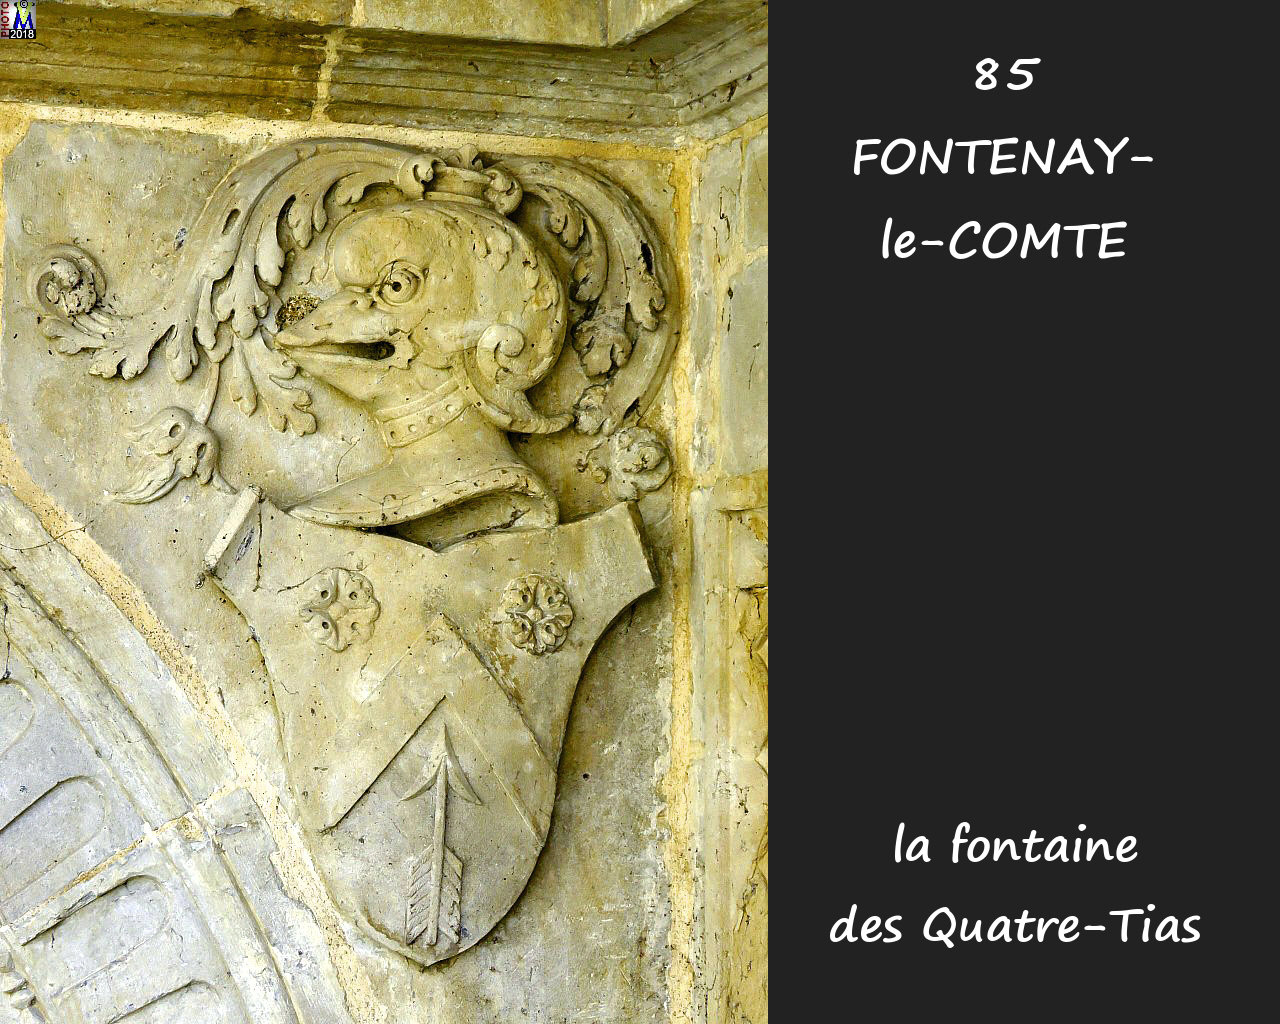 85FONTENAY-COMTE_fontaine4Tias_1012.jpg